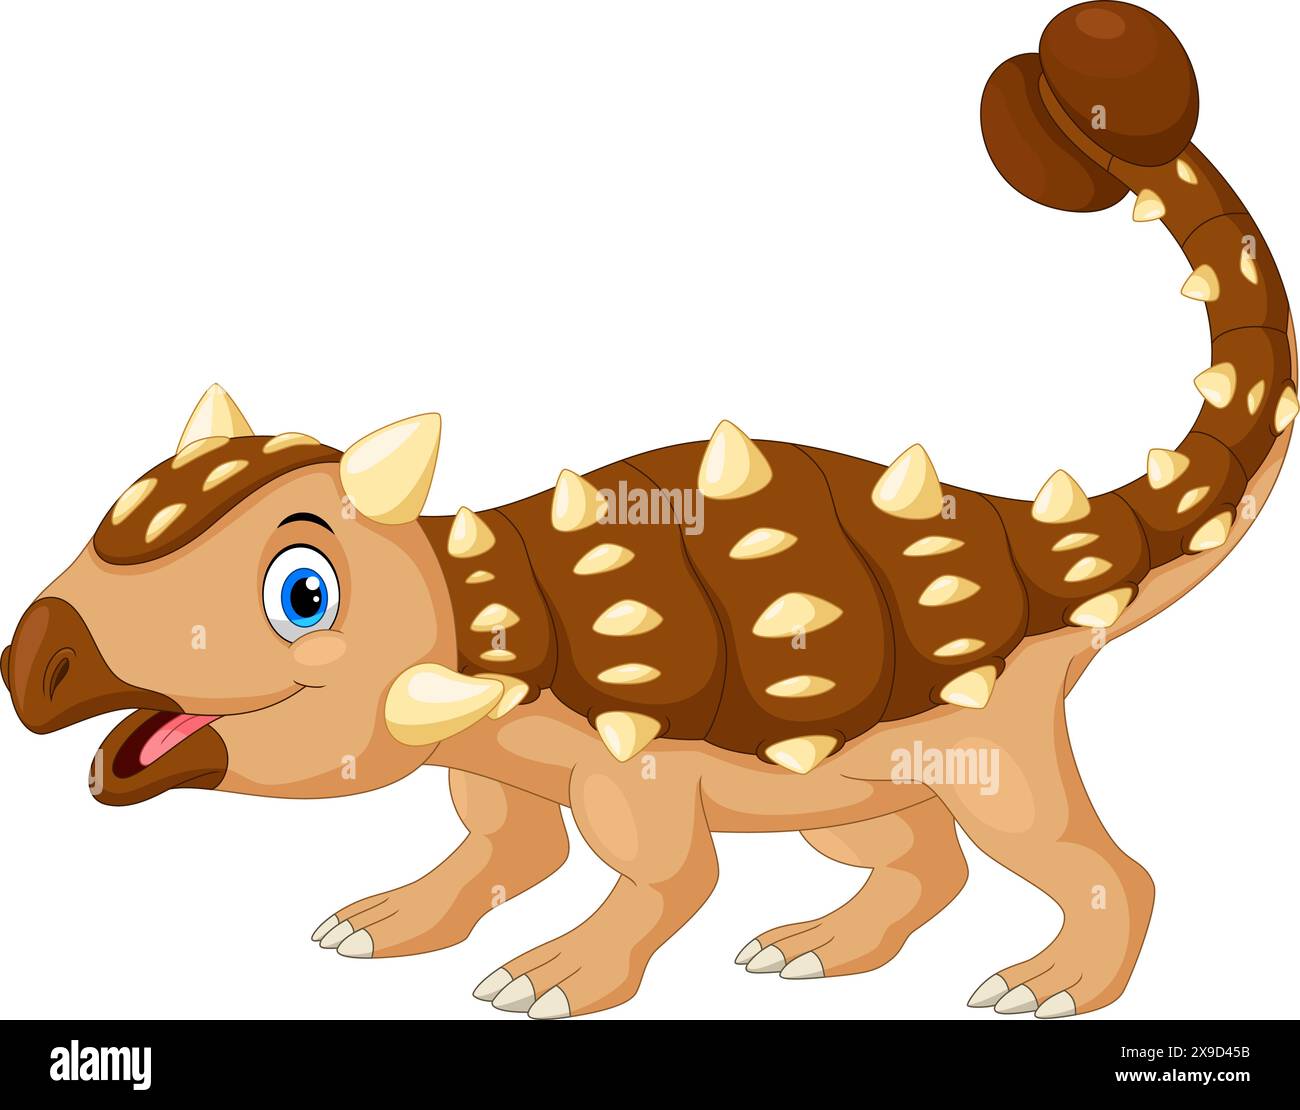 Funny ankylosaurus cartoon vector illustration on white background Stock Vector